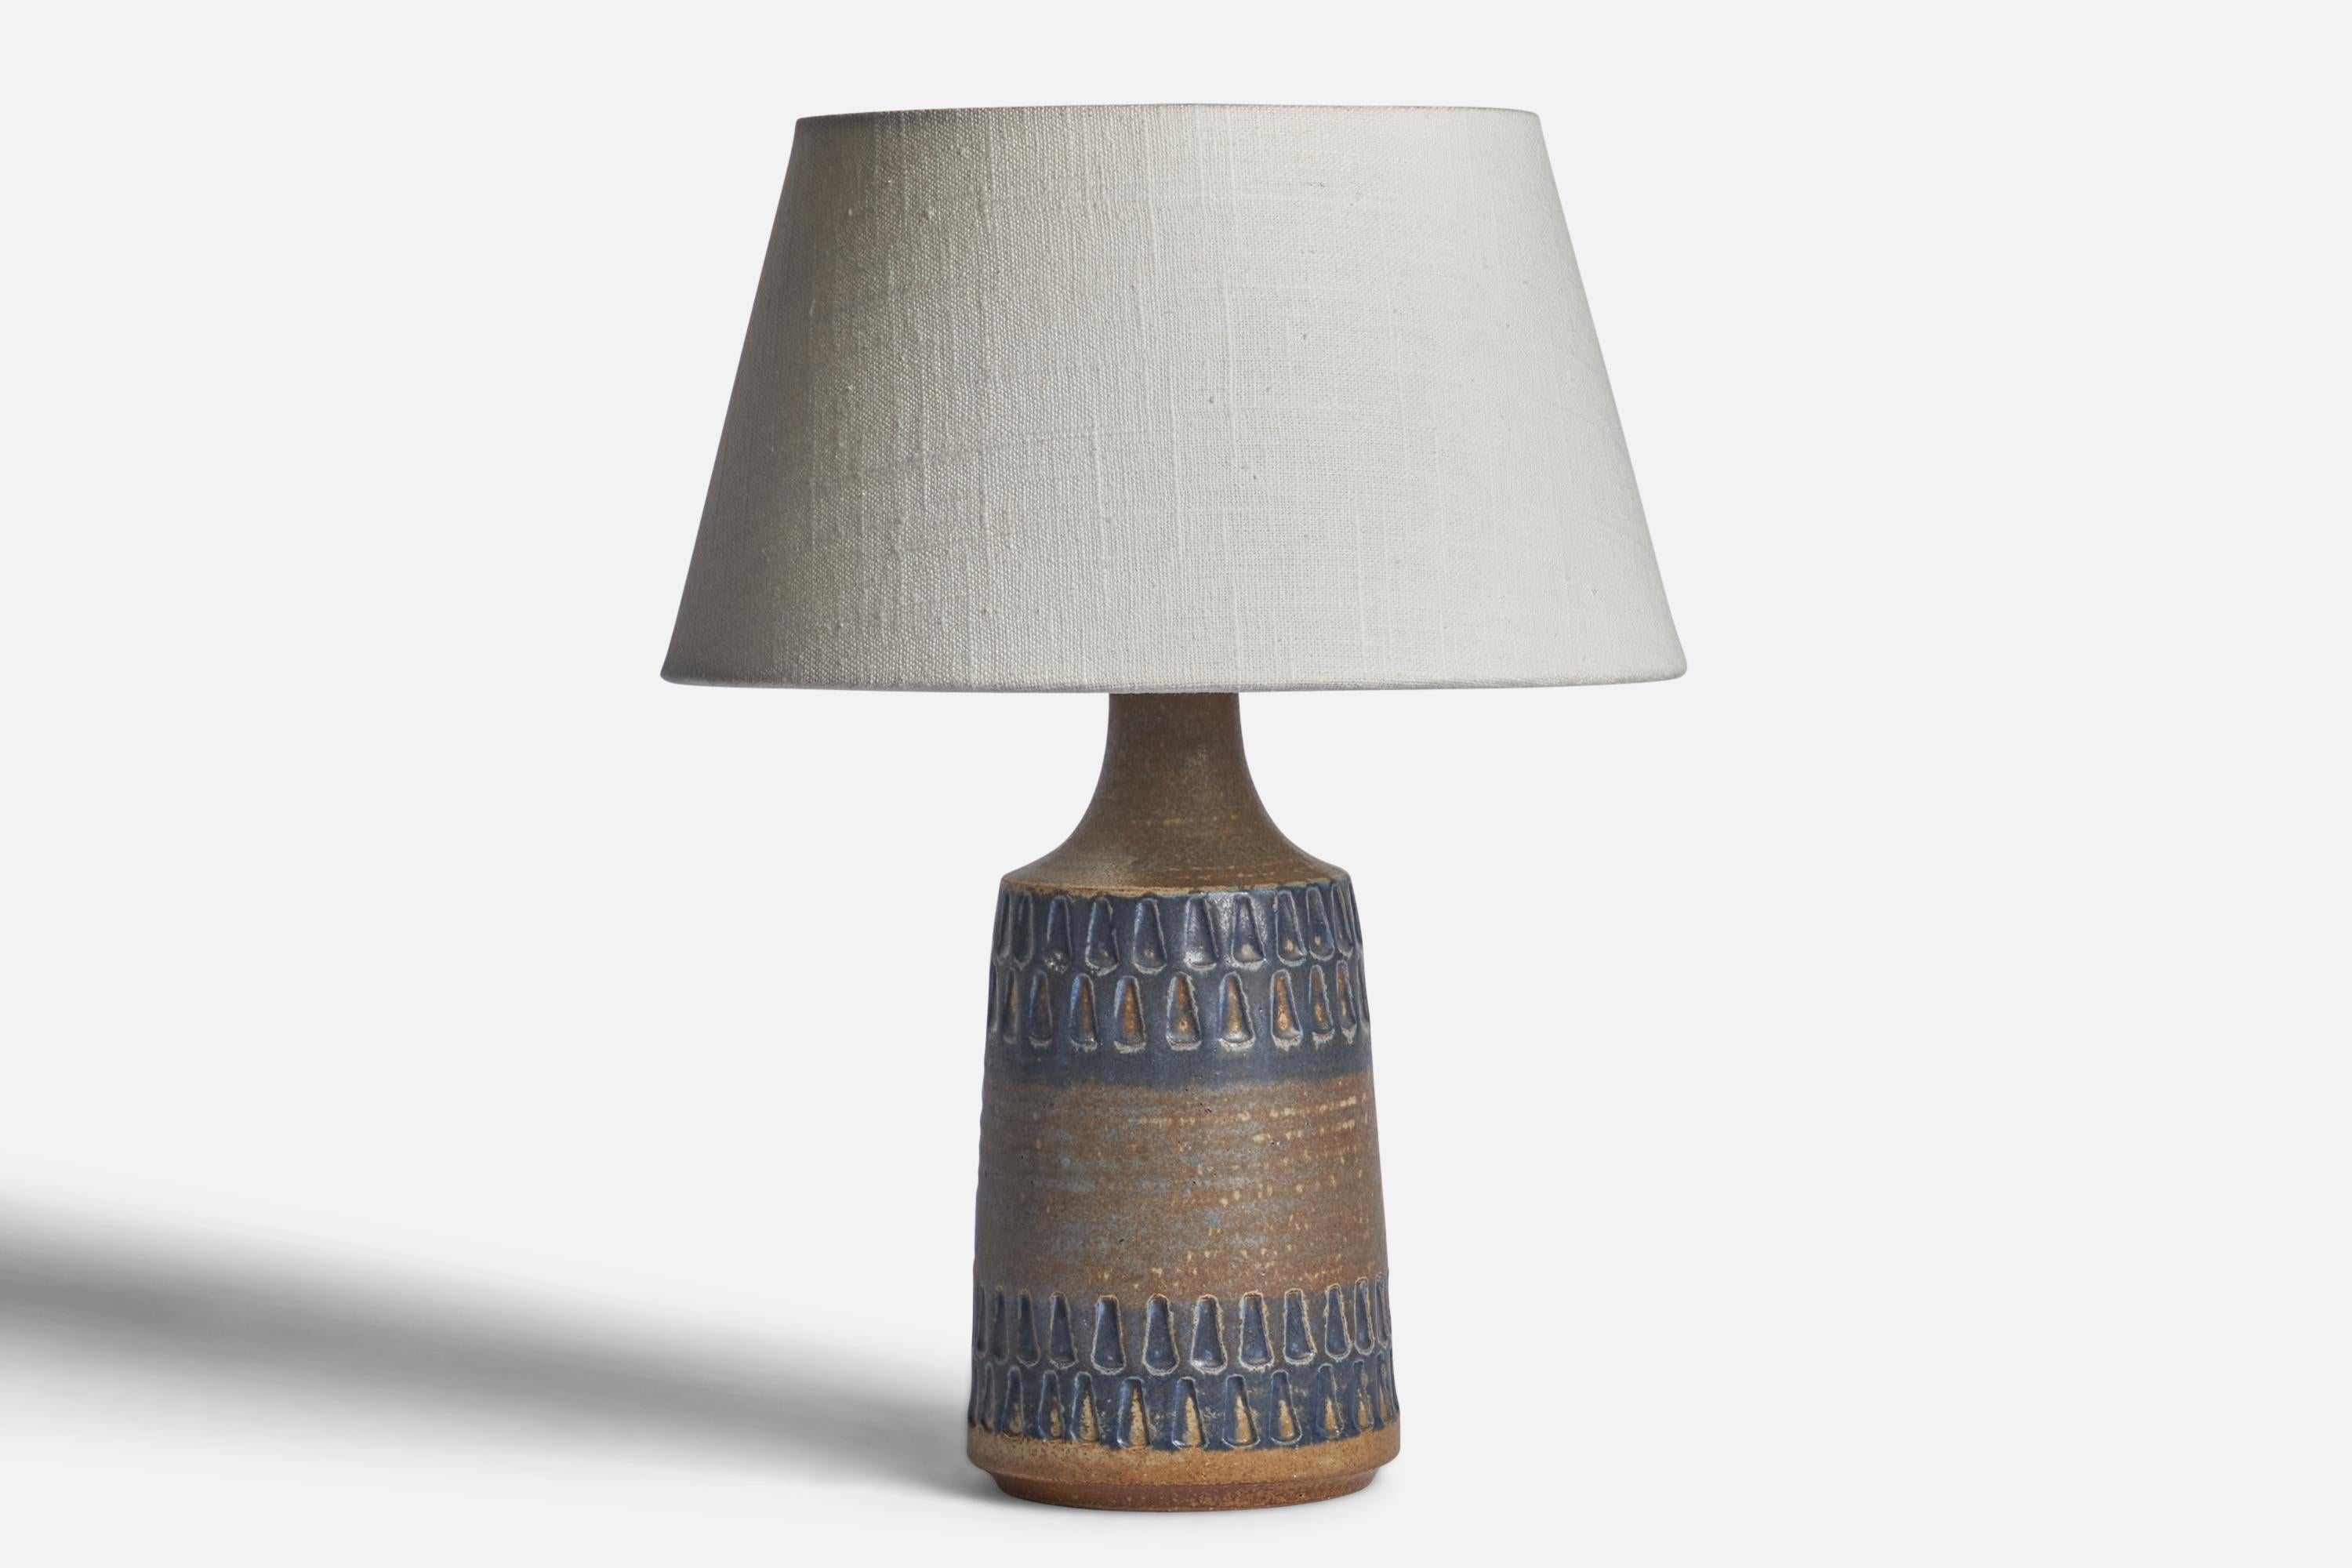 Lampe de table en grès émaillé bleu et gris, conçue et produite par 
Søholm, Bornholm, Danemark, années 1960.

Dimensions de la lampe (pouces) : 10.5